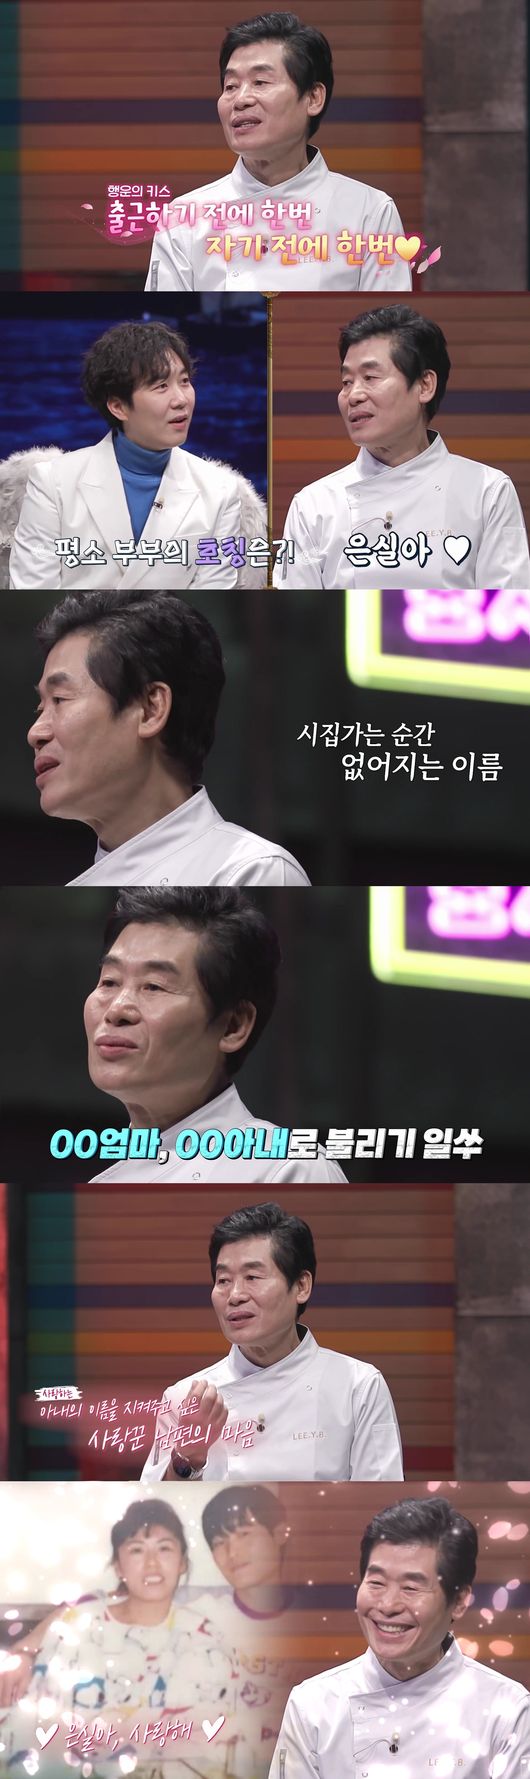 '신과한판' 제공